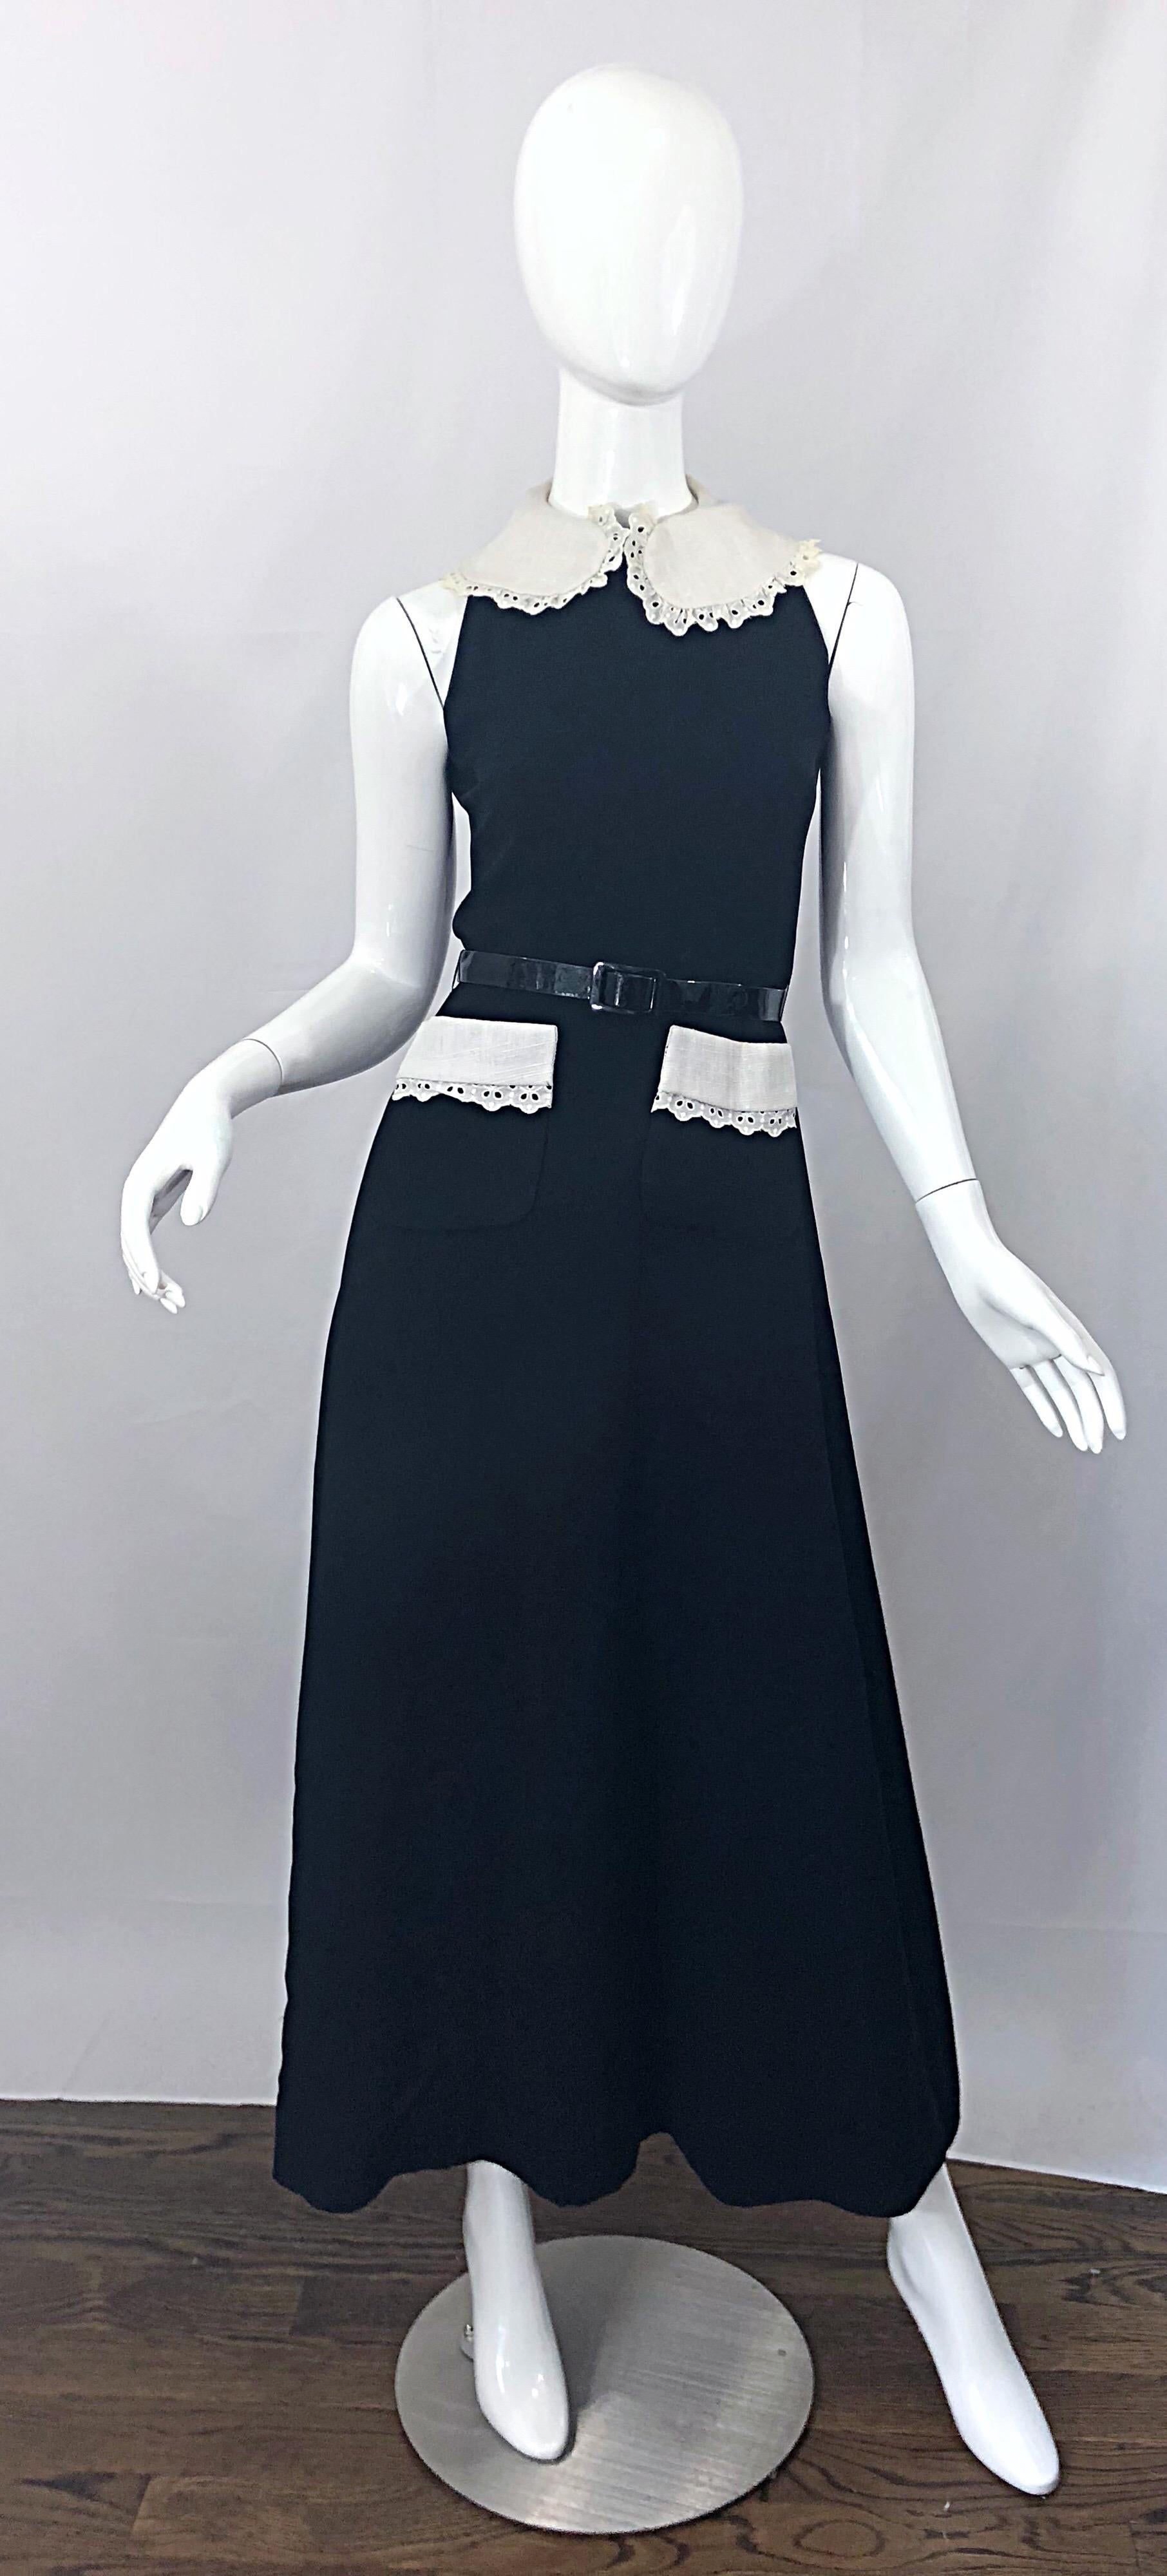 Schöne frühen 1970er DONALD BROOKS schwarz-weißes Maxikleid Kleid ! Aus luxuriösem Krepp-Rayon-Gewebe, das sich wunderbar drapieren lässt. Schicker hoher Halsausschnitt mit weißem Leinen-Ösen-Kragen, mit passendem weißen Ösenbesatz an jeder Tasche